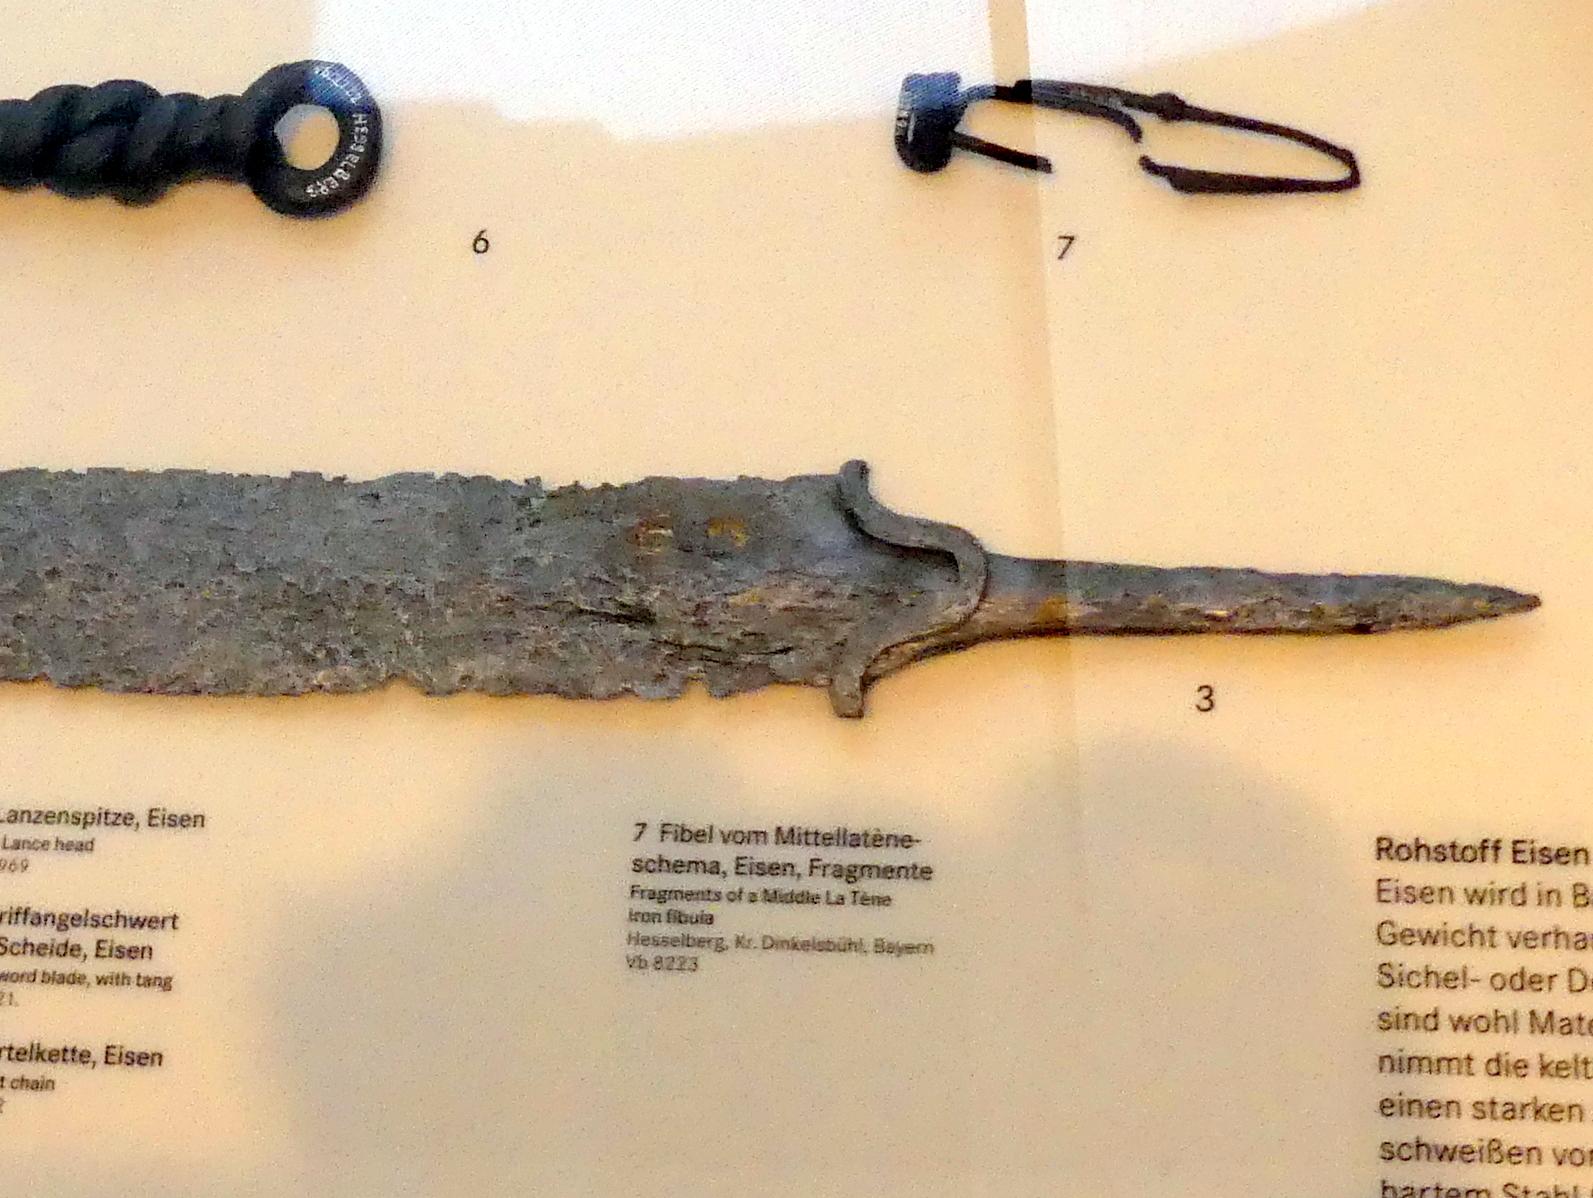 Schwert mit goldenen Eberschlagmarken, Latènezeit, 700 - 1 v. Chr., Bild 1/4